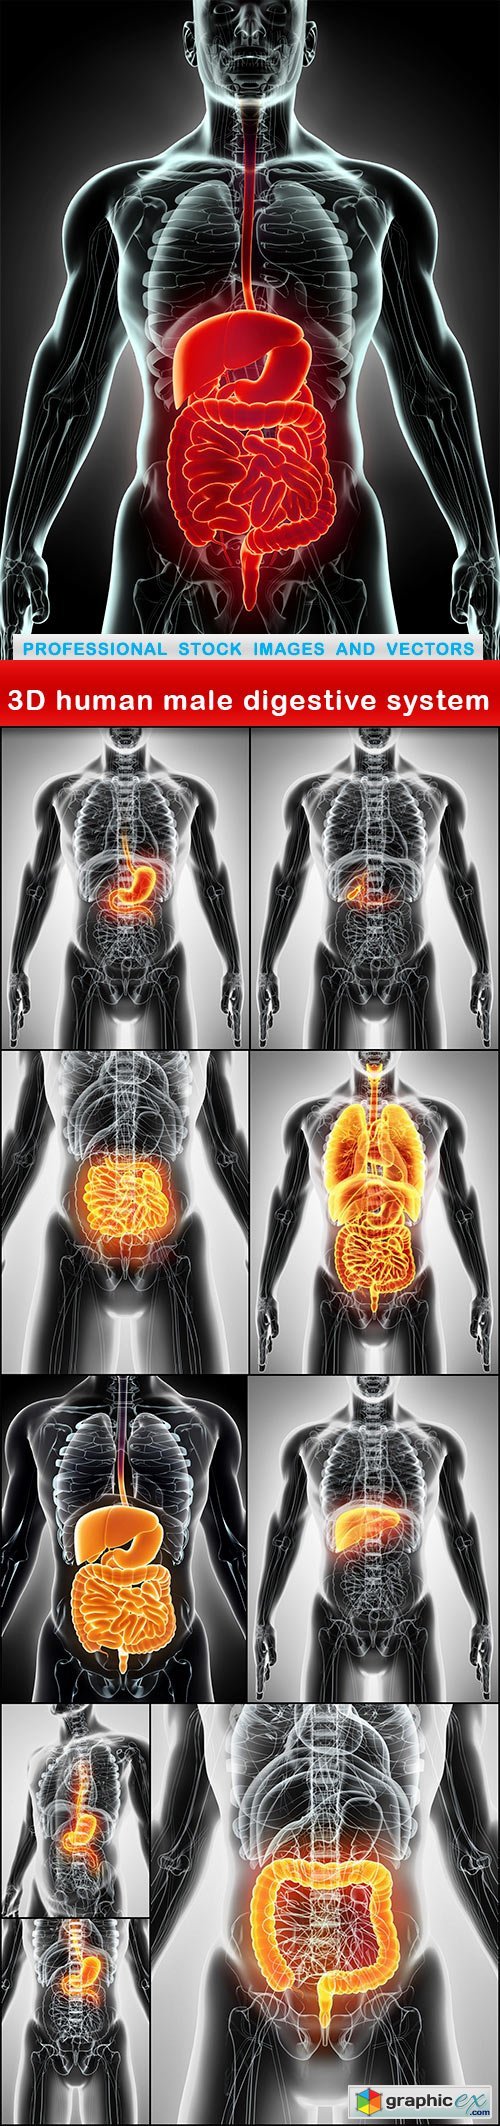 3D human male digestive system - 10 UHQ JPEG